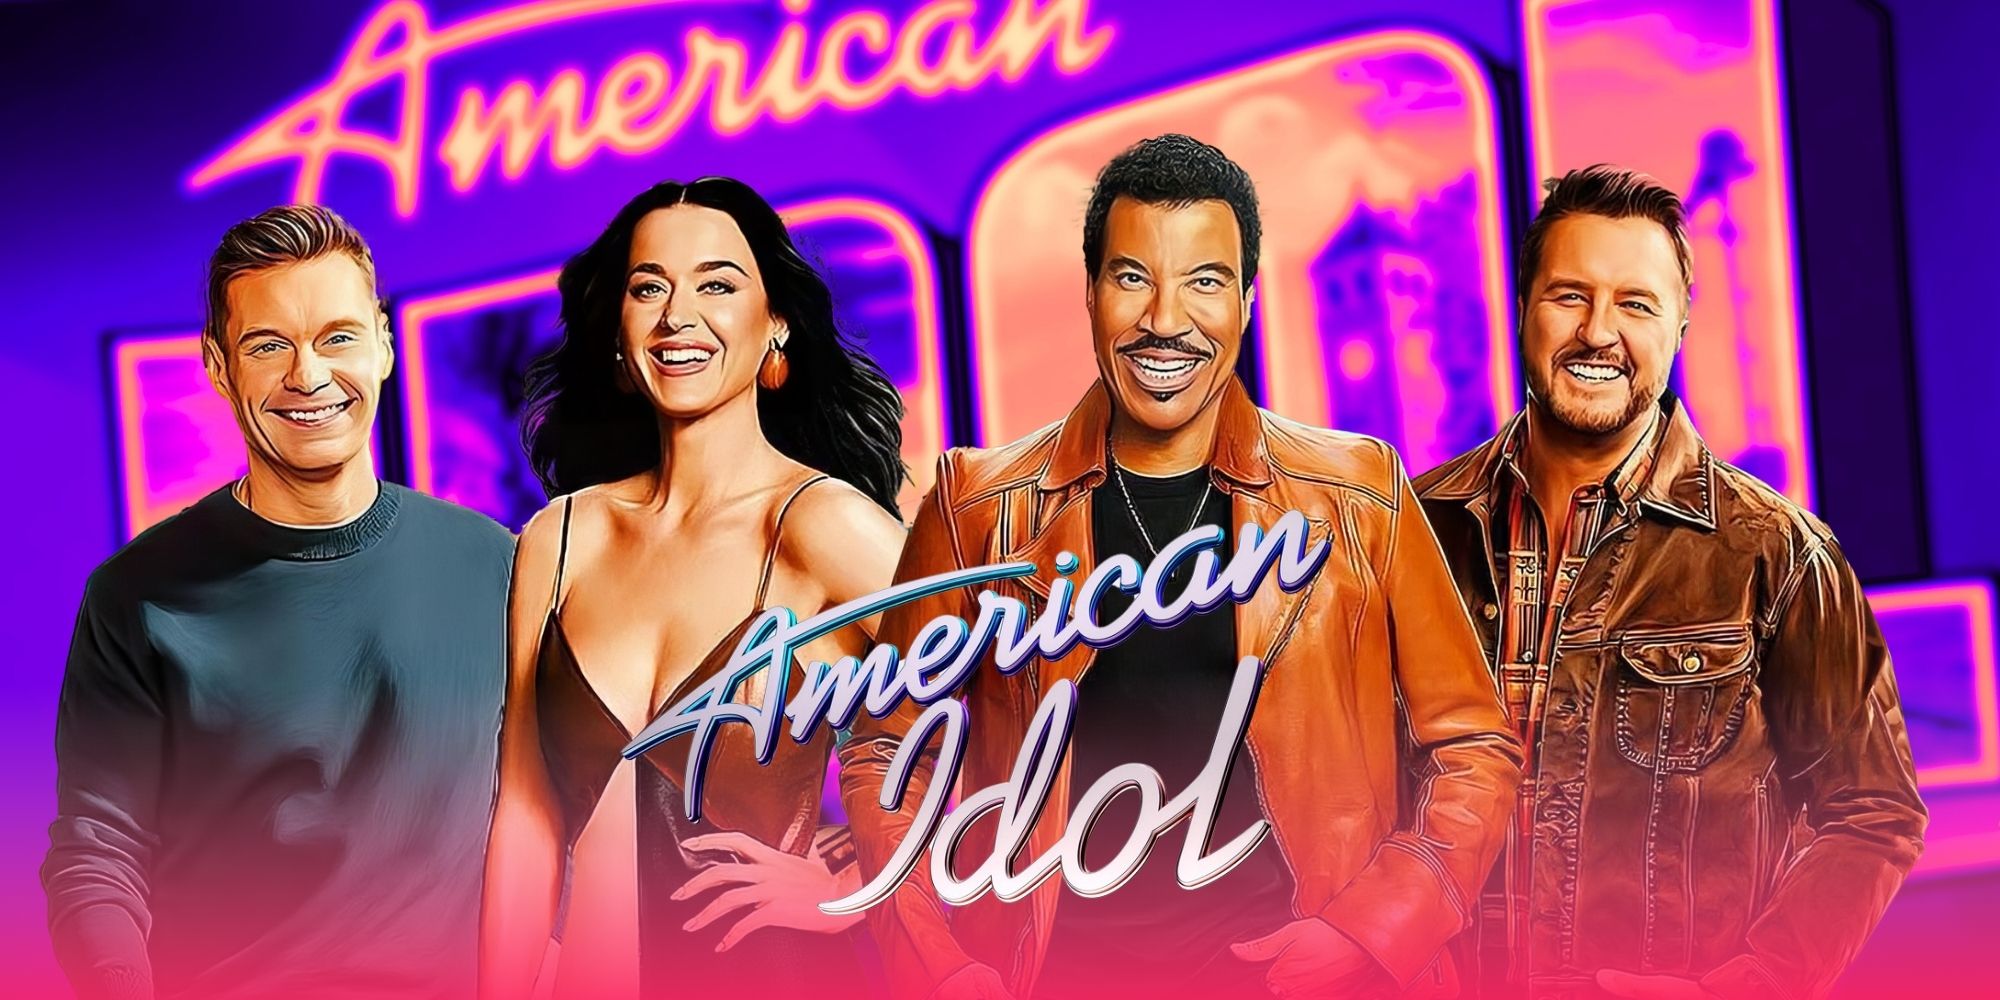 Este concursante de la temporada 22 de American Idol renuncia antes de la Semana de Hollywood